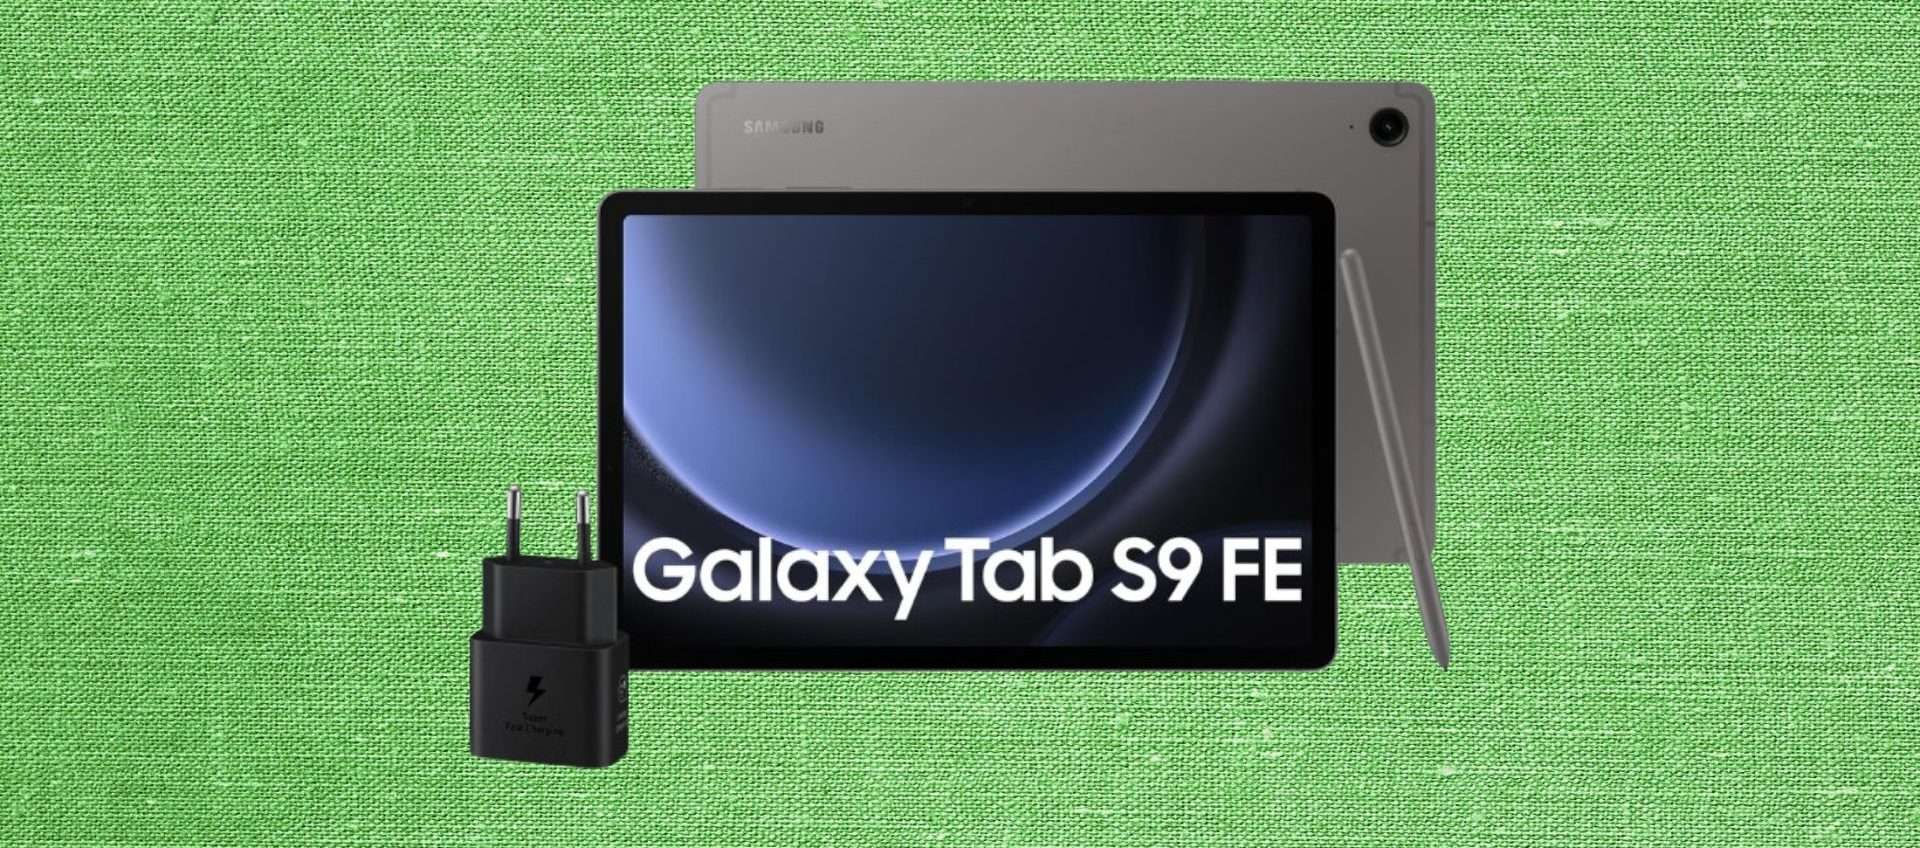 Samsung Galaxy Tab S9 FE in offerta: il prezzo crolla da 549 a 379 euro